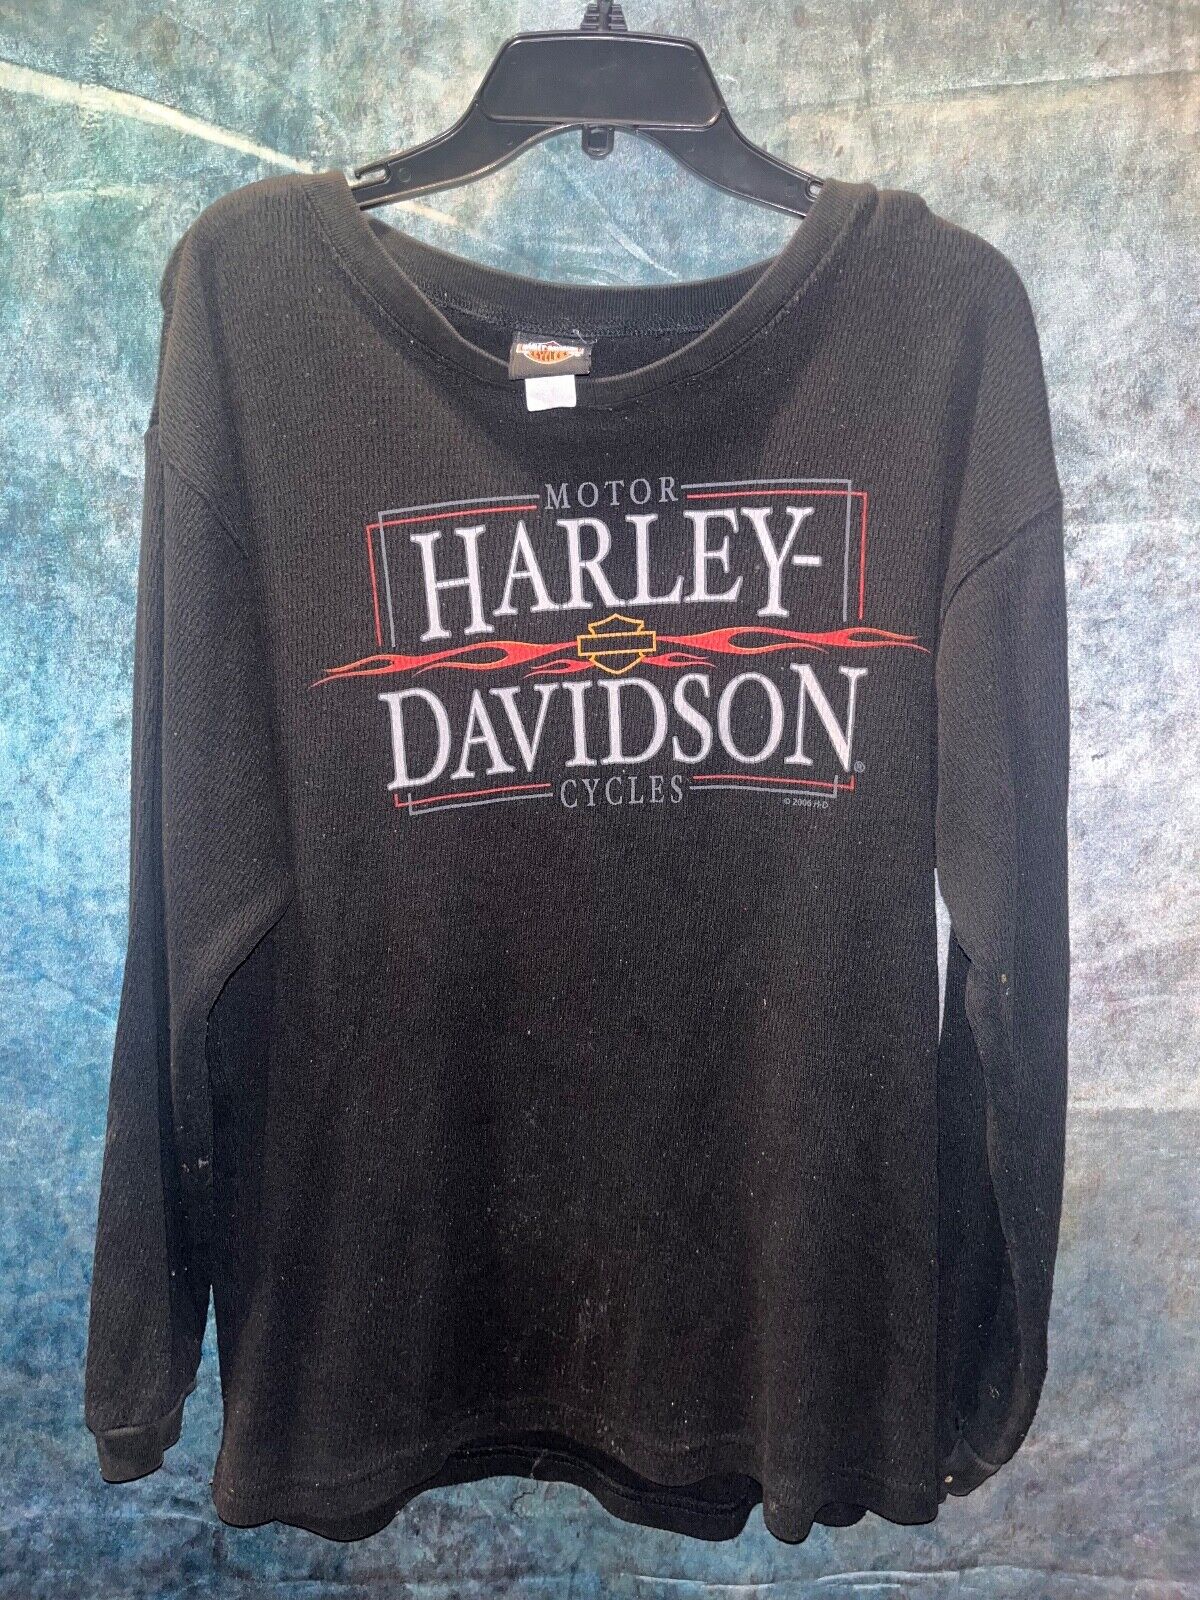 Vintage 2006 Harley Davidson Black Crewneck Sweater Smokey Mountain Size L/XL